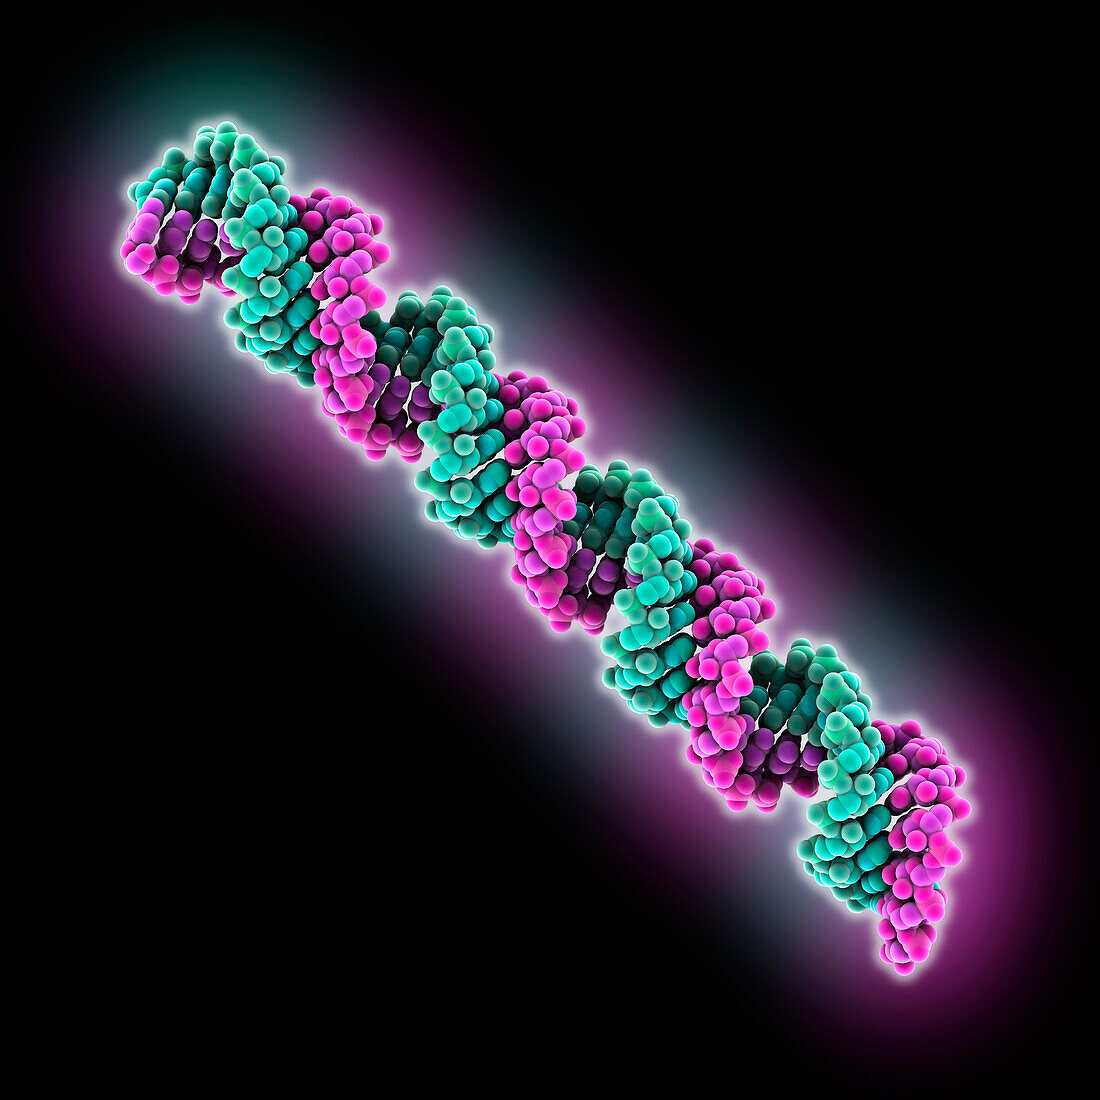 Synthetic RNA, molecular model